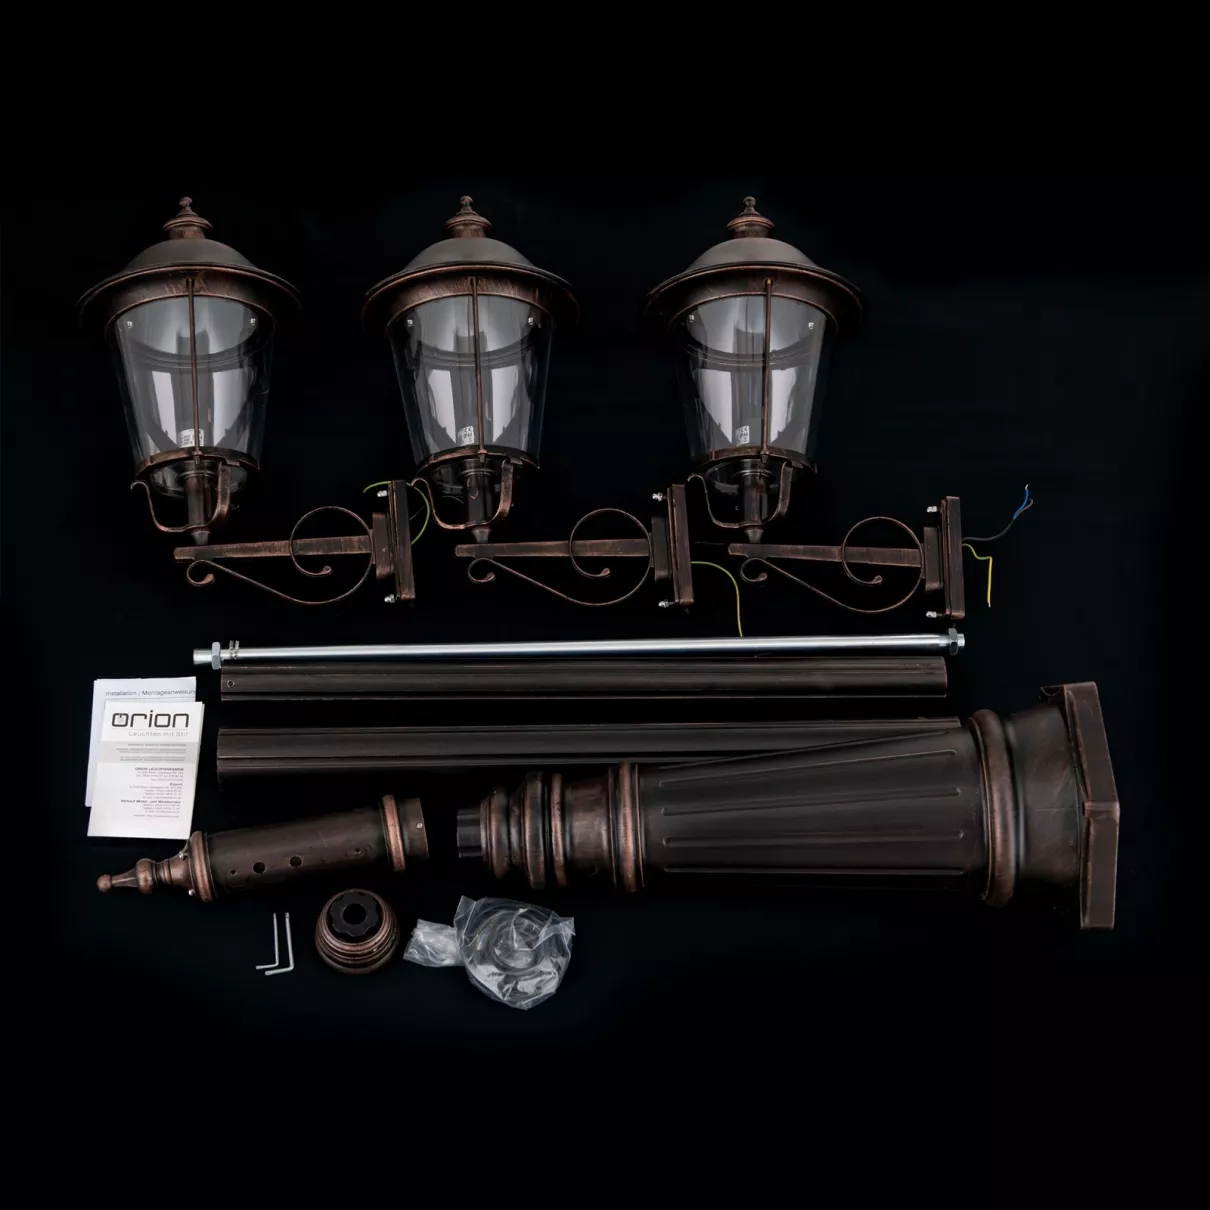 KENZO kültéri állólámpa, kandeláber; m:260cm; 3xE27  -  ORI-AL 11K/360.PF8T3 schw.-kupfer (3xE27)